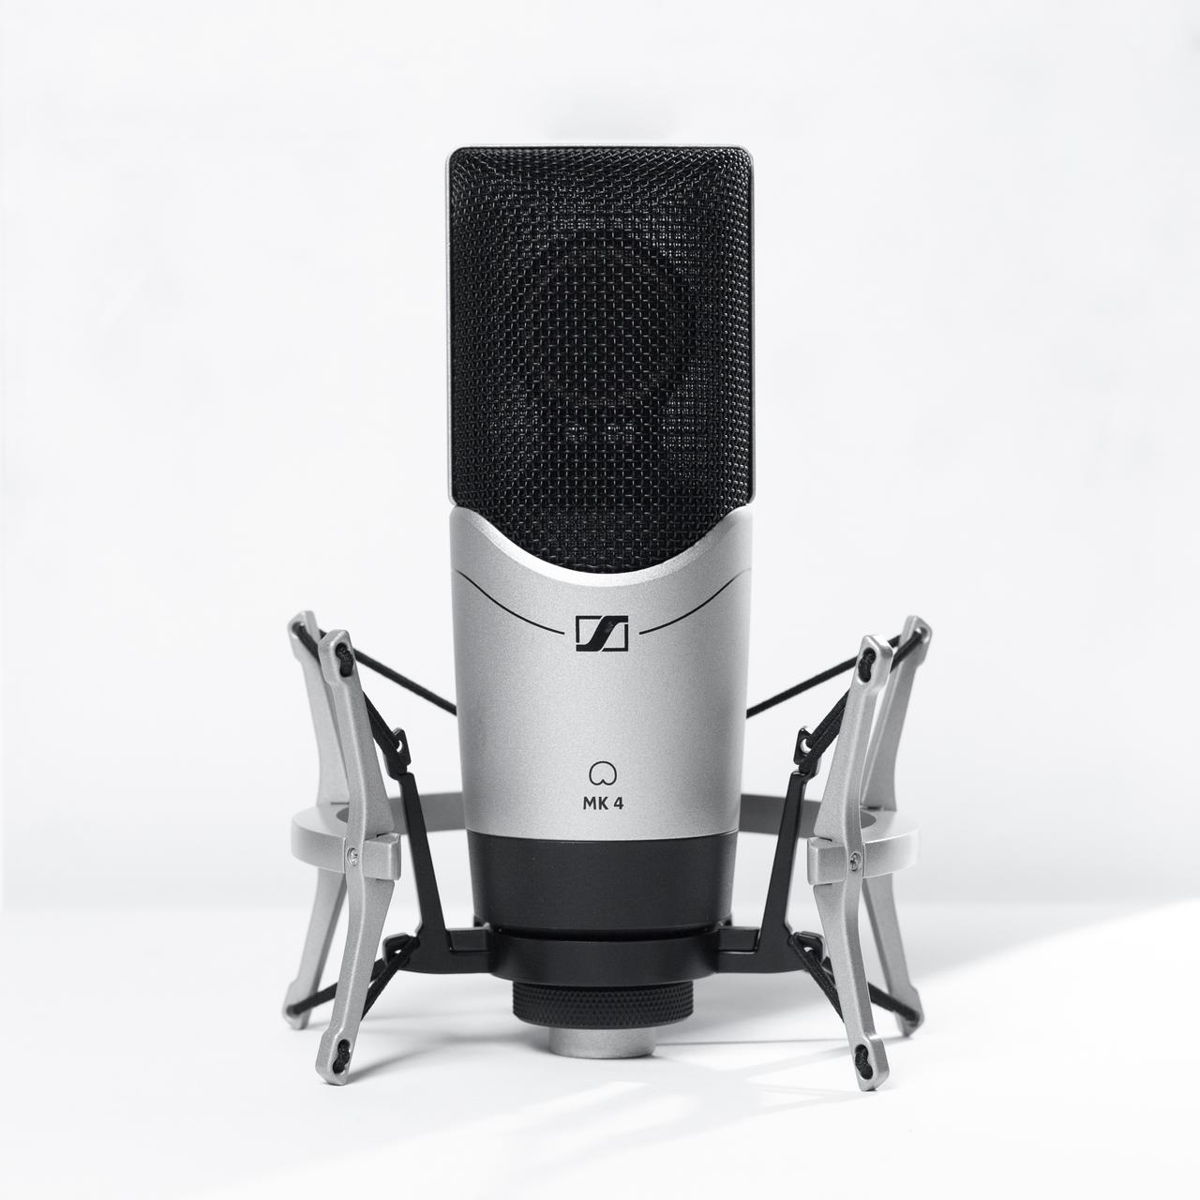 Le microphone à condensateur MK 4 de Sennheiser pour la maison, les projets et les studios professionnels